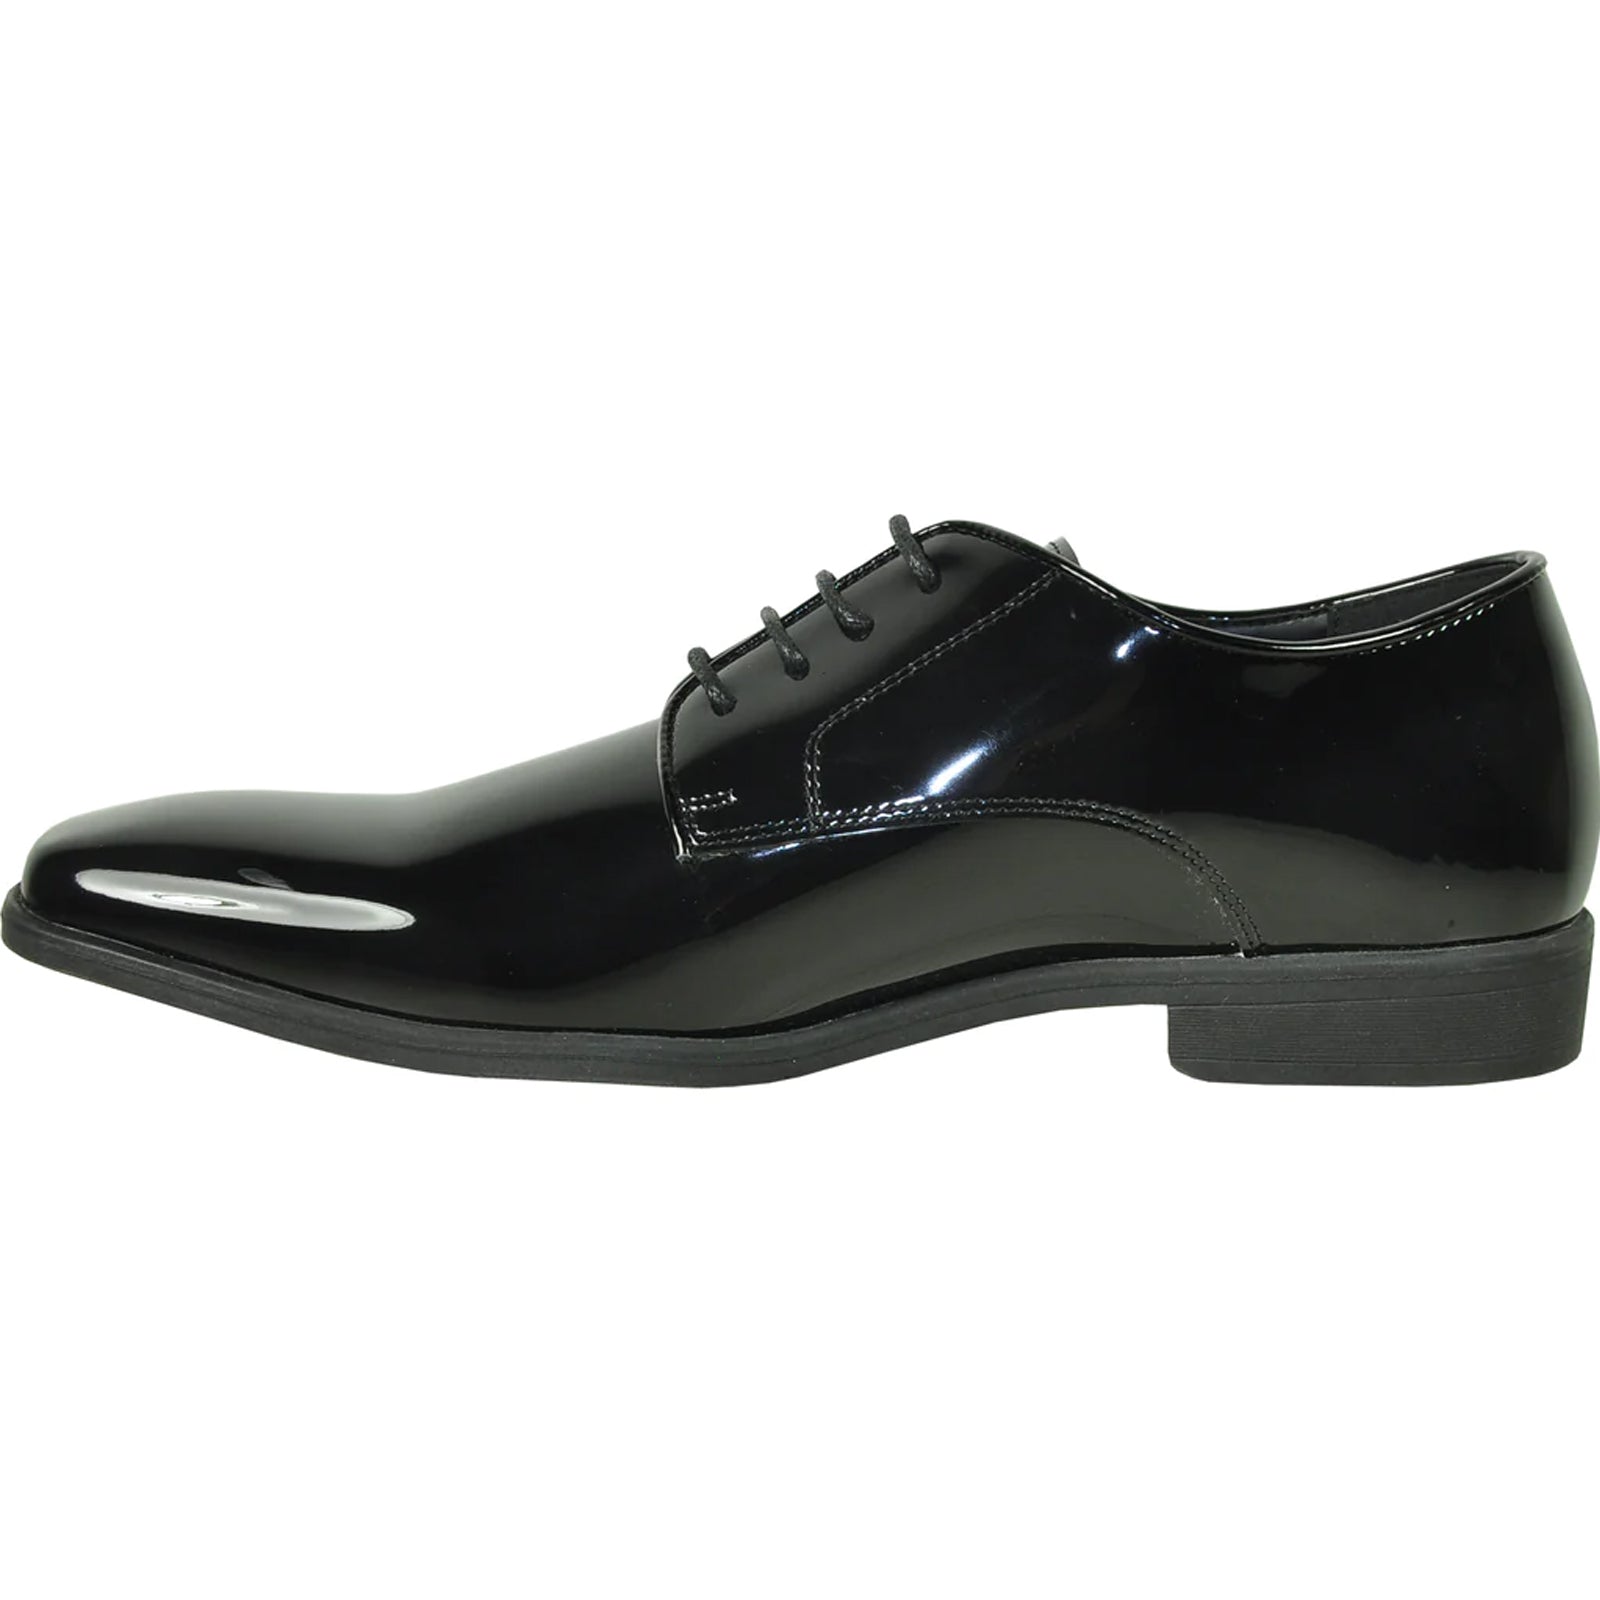 "Black Patent Plain Toe Tuxedo Dress Shoe for Men"